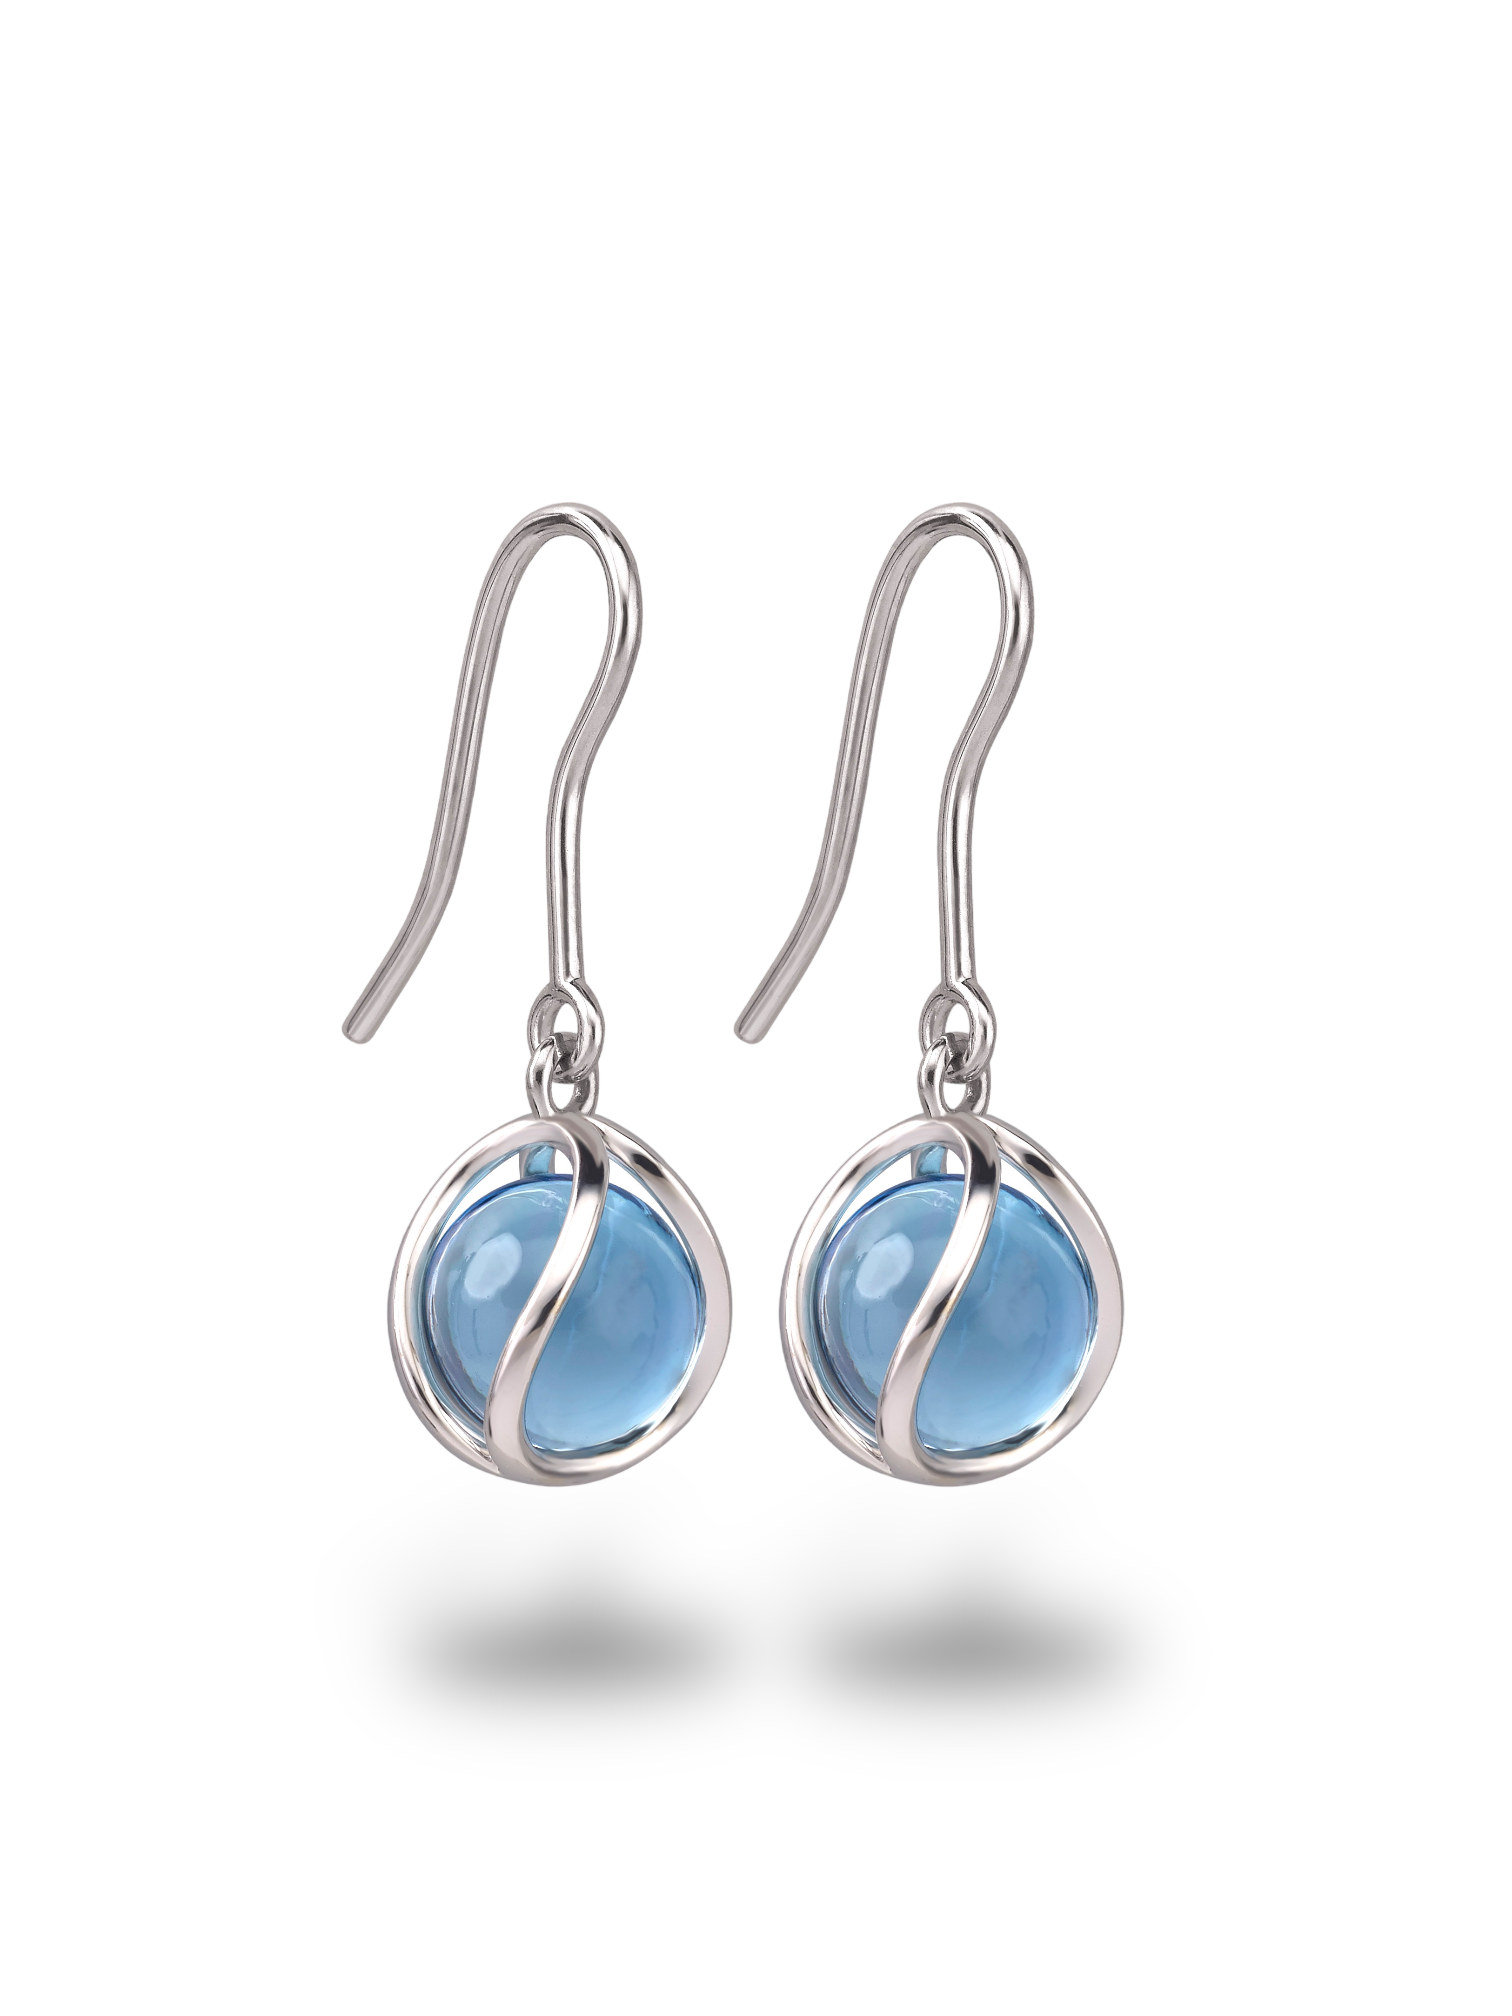 The Suspension Earrings - Swiss Blue Topaz Devam